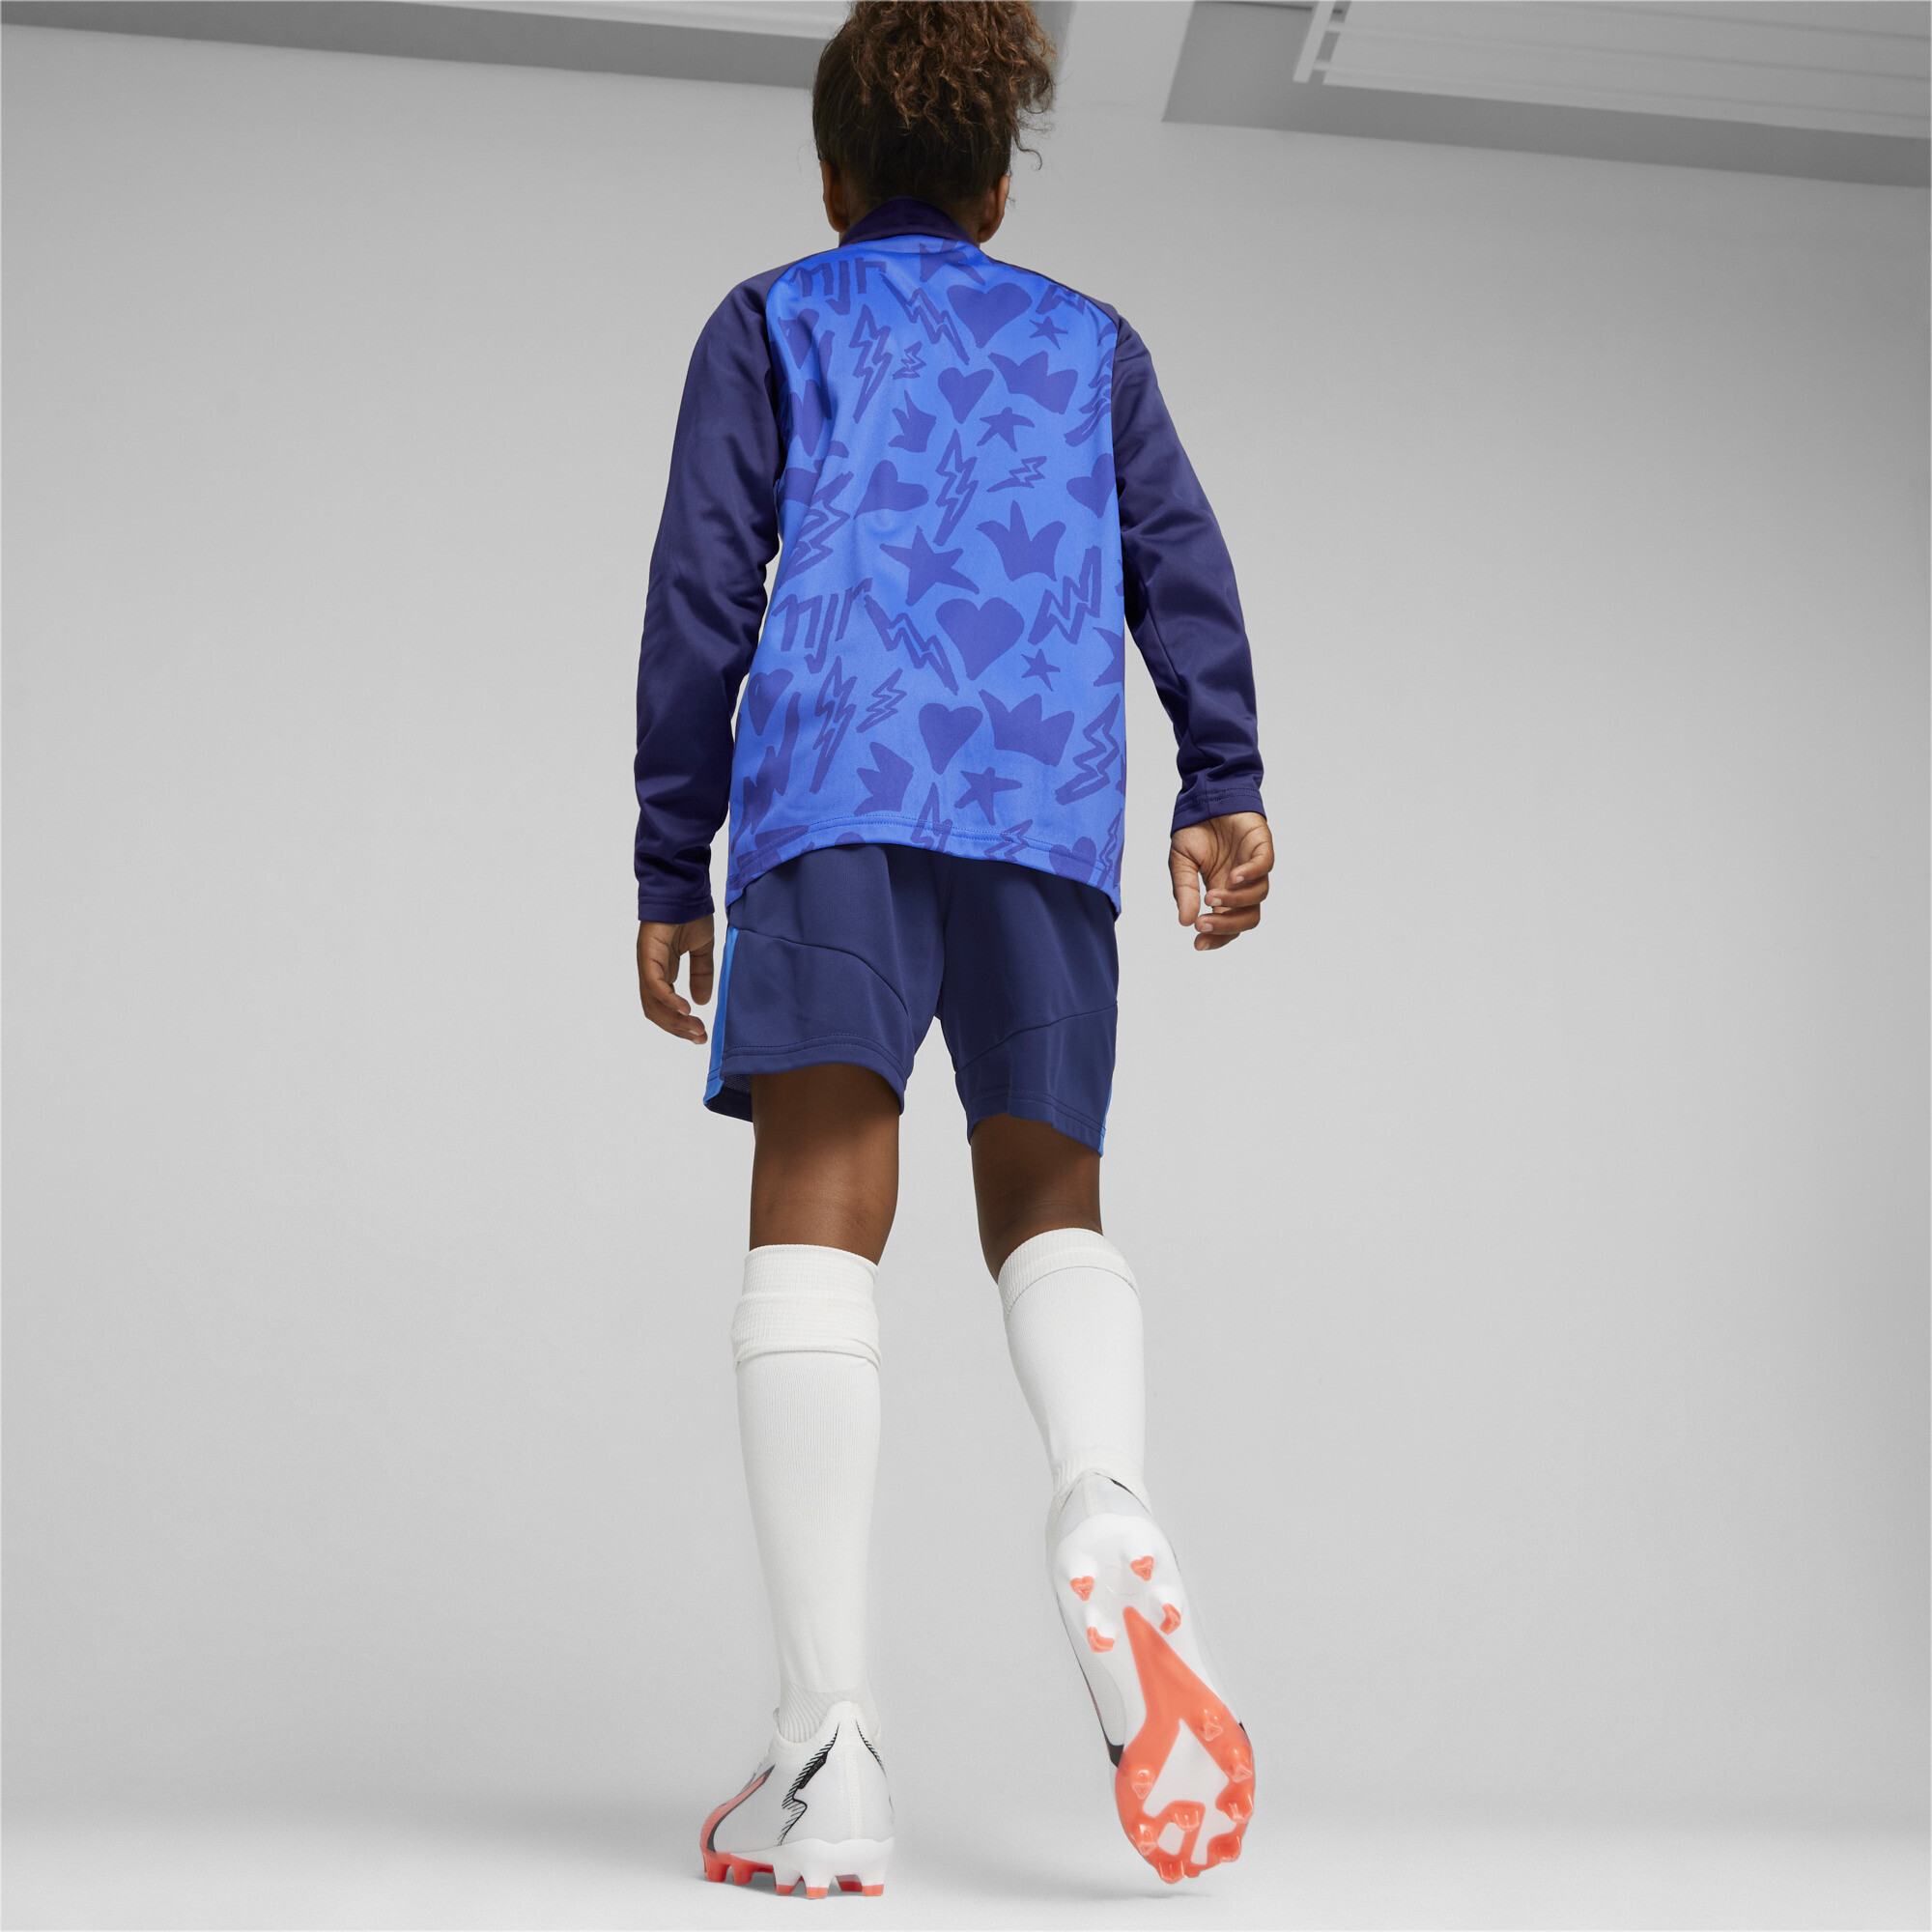 PUMA Neymar Jr Football Shorts In Blue, Size 13-14 Youth